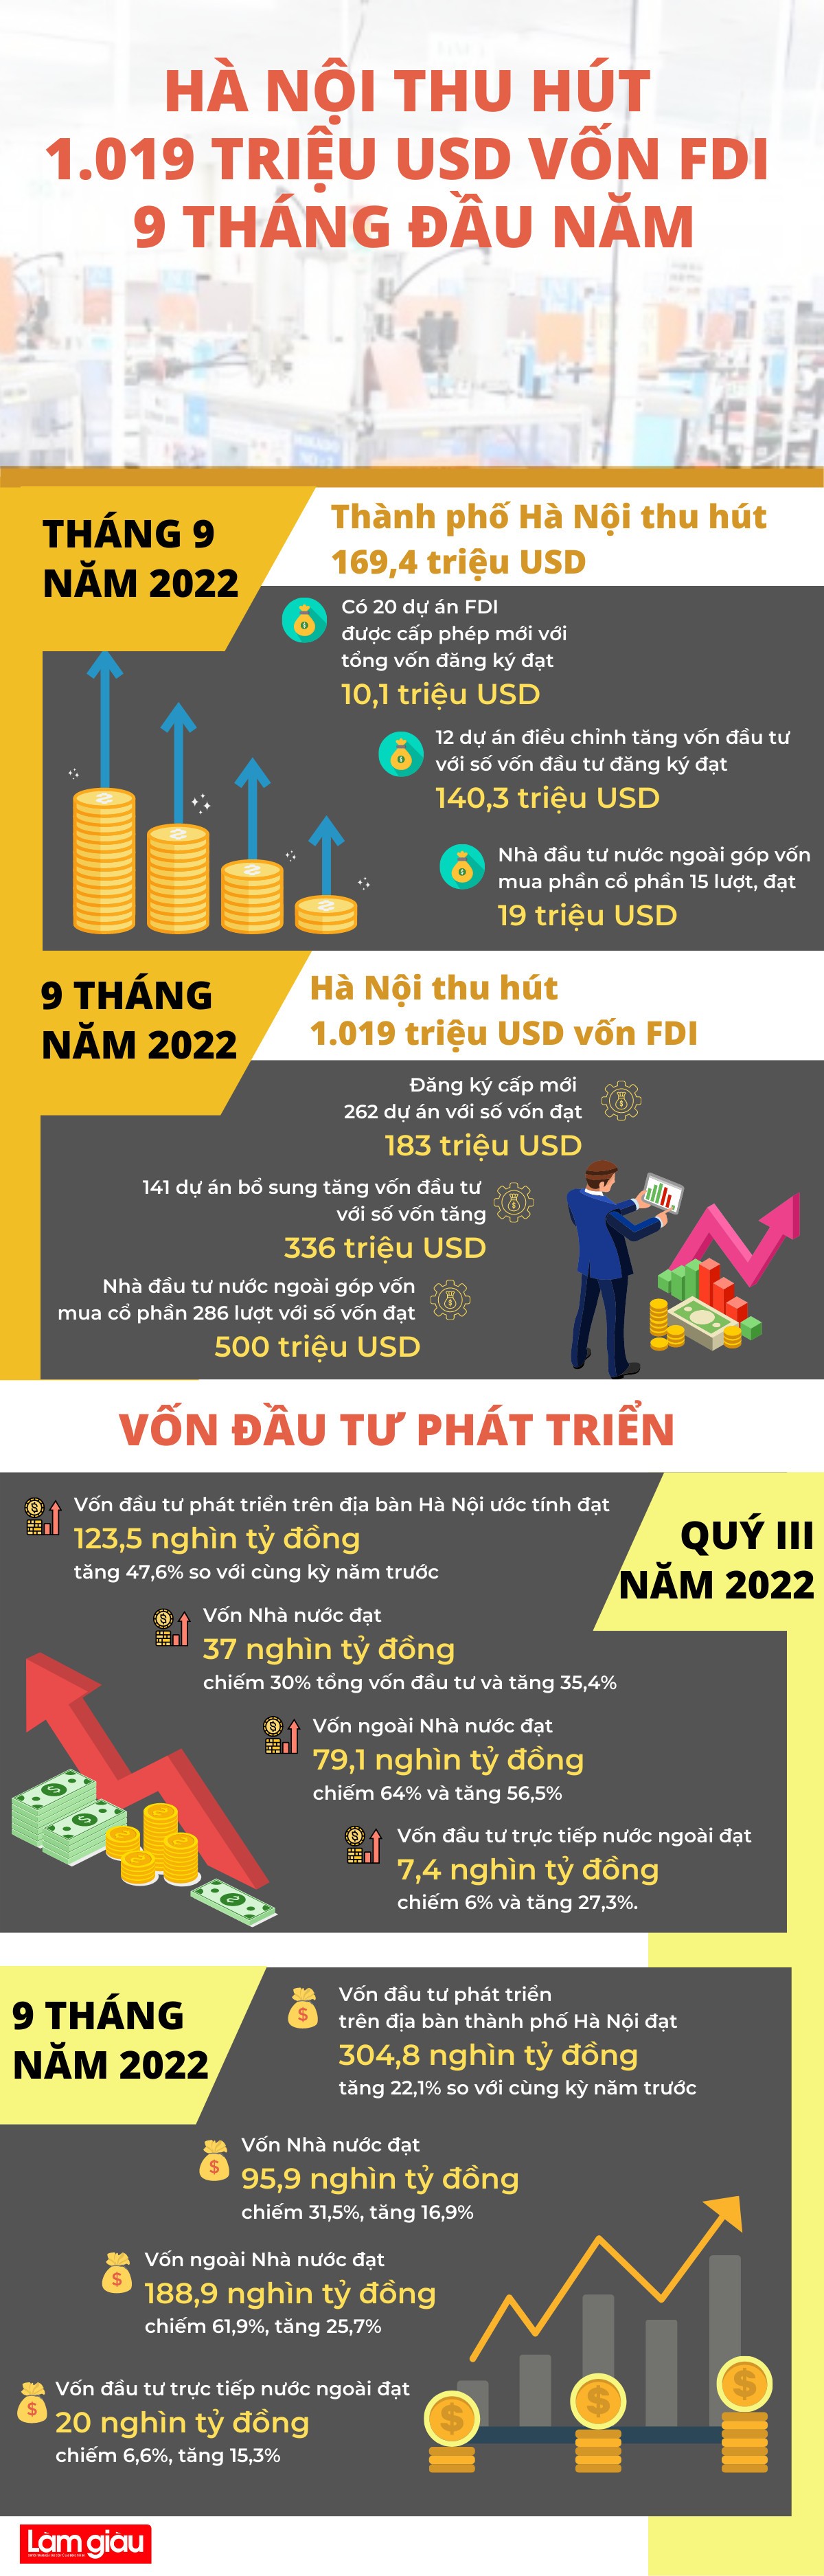 [Infographic] Hà Nội thu hút 1.019 triệu USD vốn FDI 9 tháng đầu năm